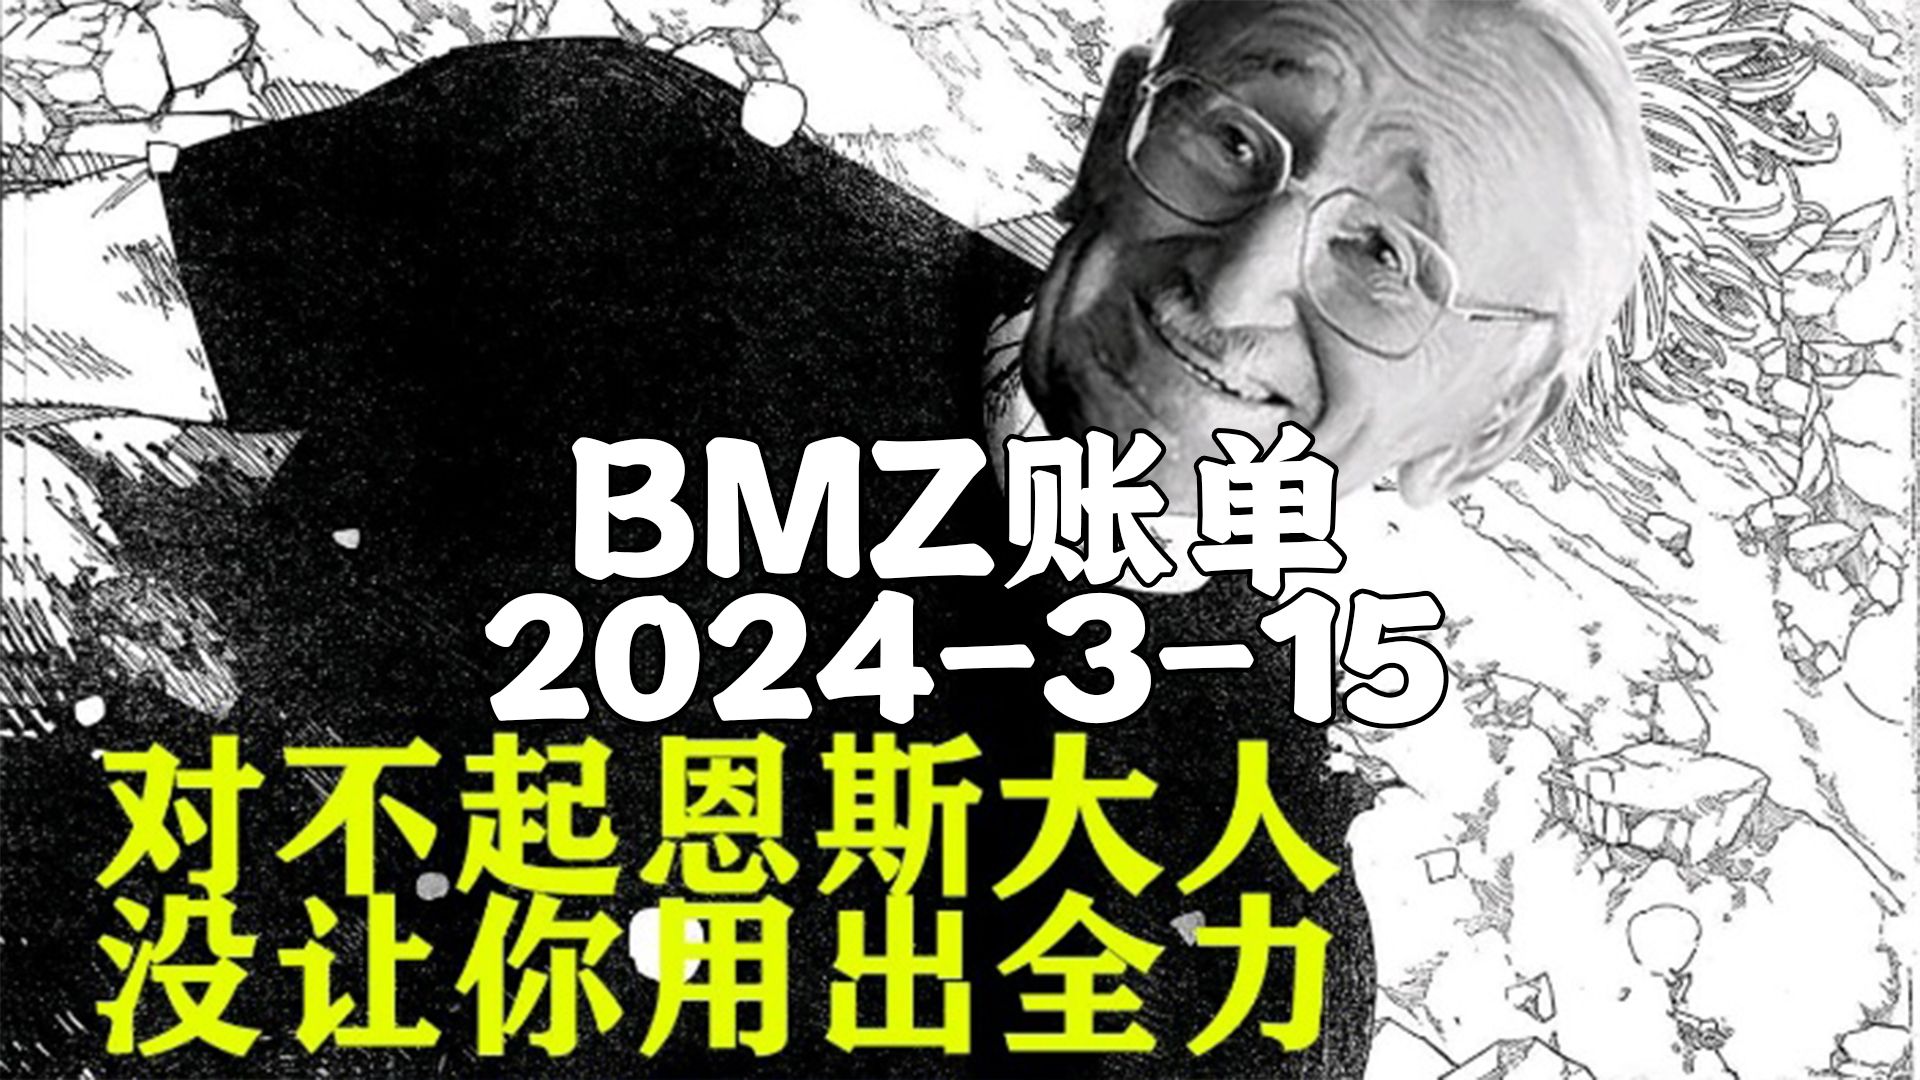 【BMZ账单】2024-3-15抵抗系2台经济频道 去无声